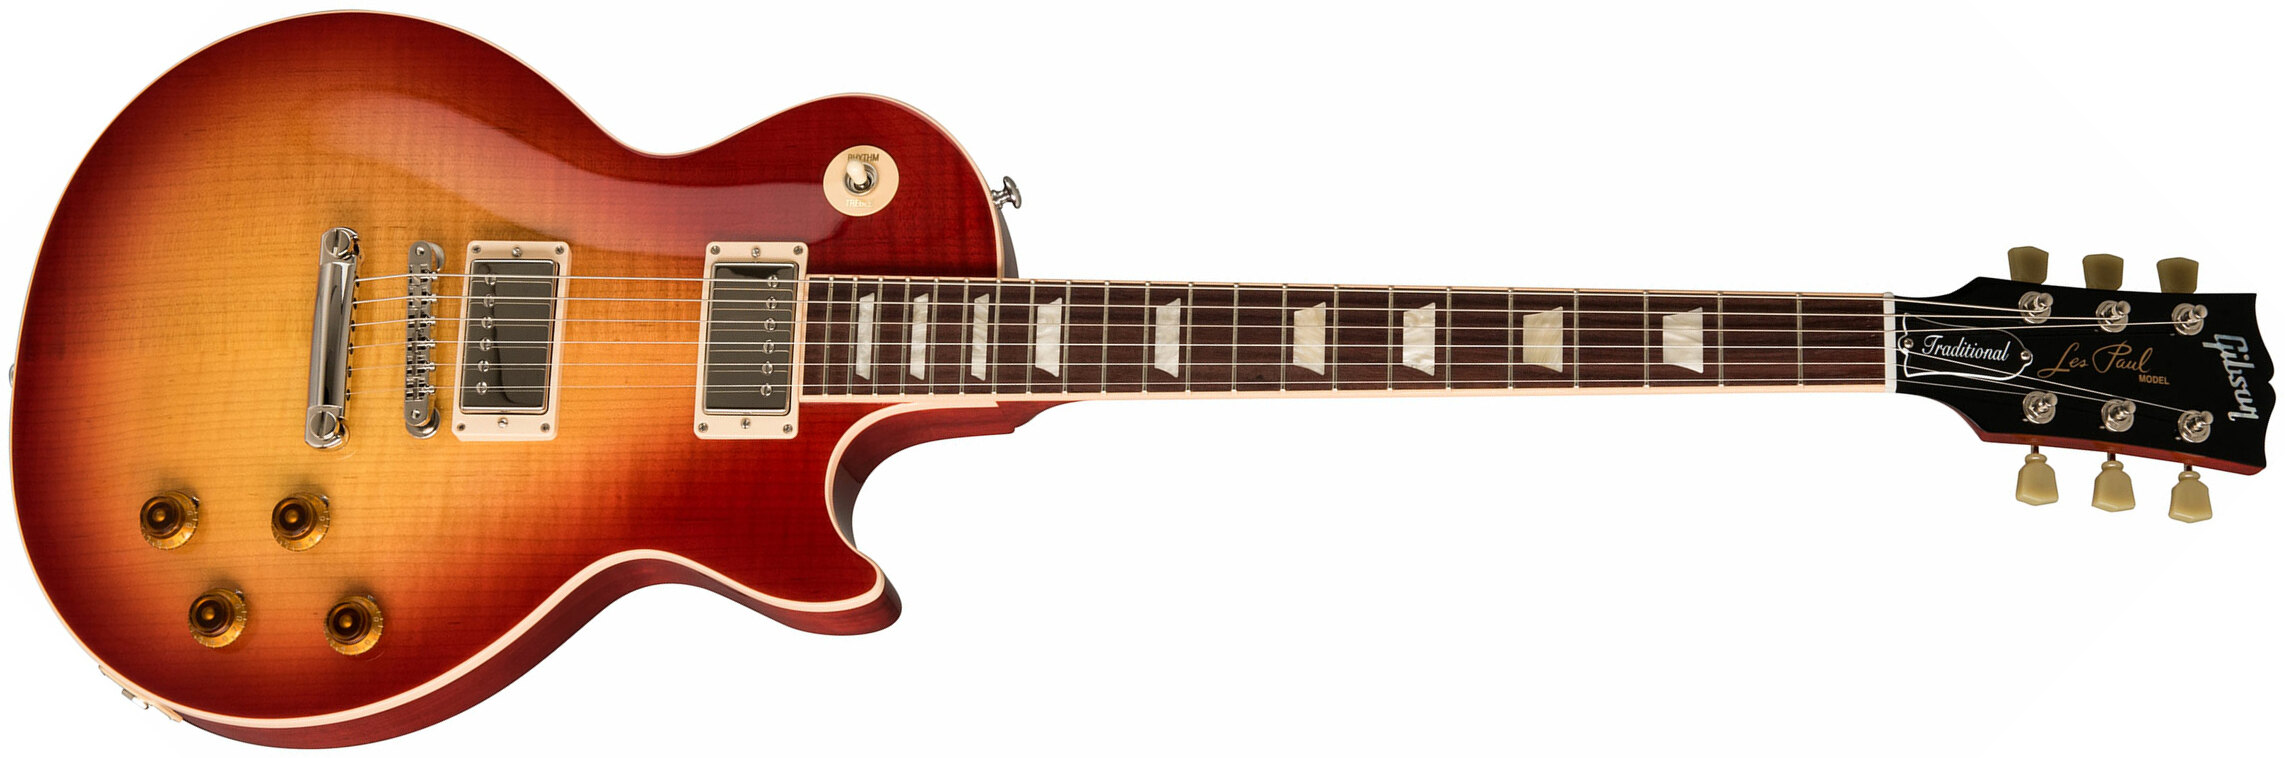 Gibson Les Paul Traditional 2019 2h Ht Rw - Heritage Cherry Sunburst - Guitare Électrique Single Cut - Main picture